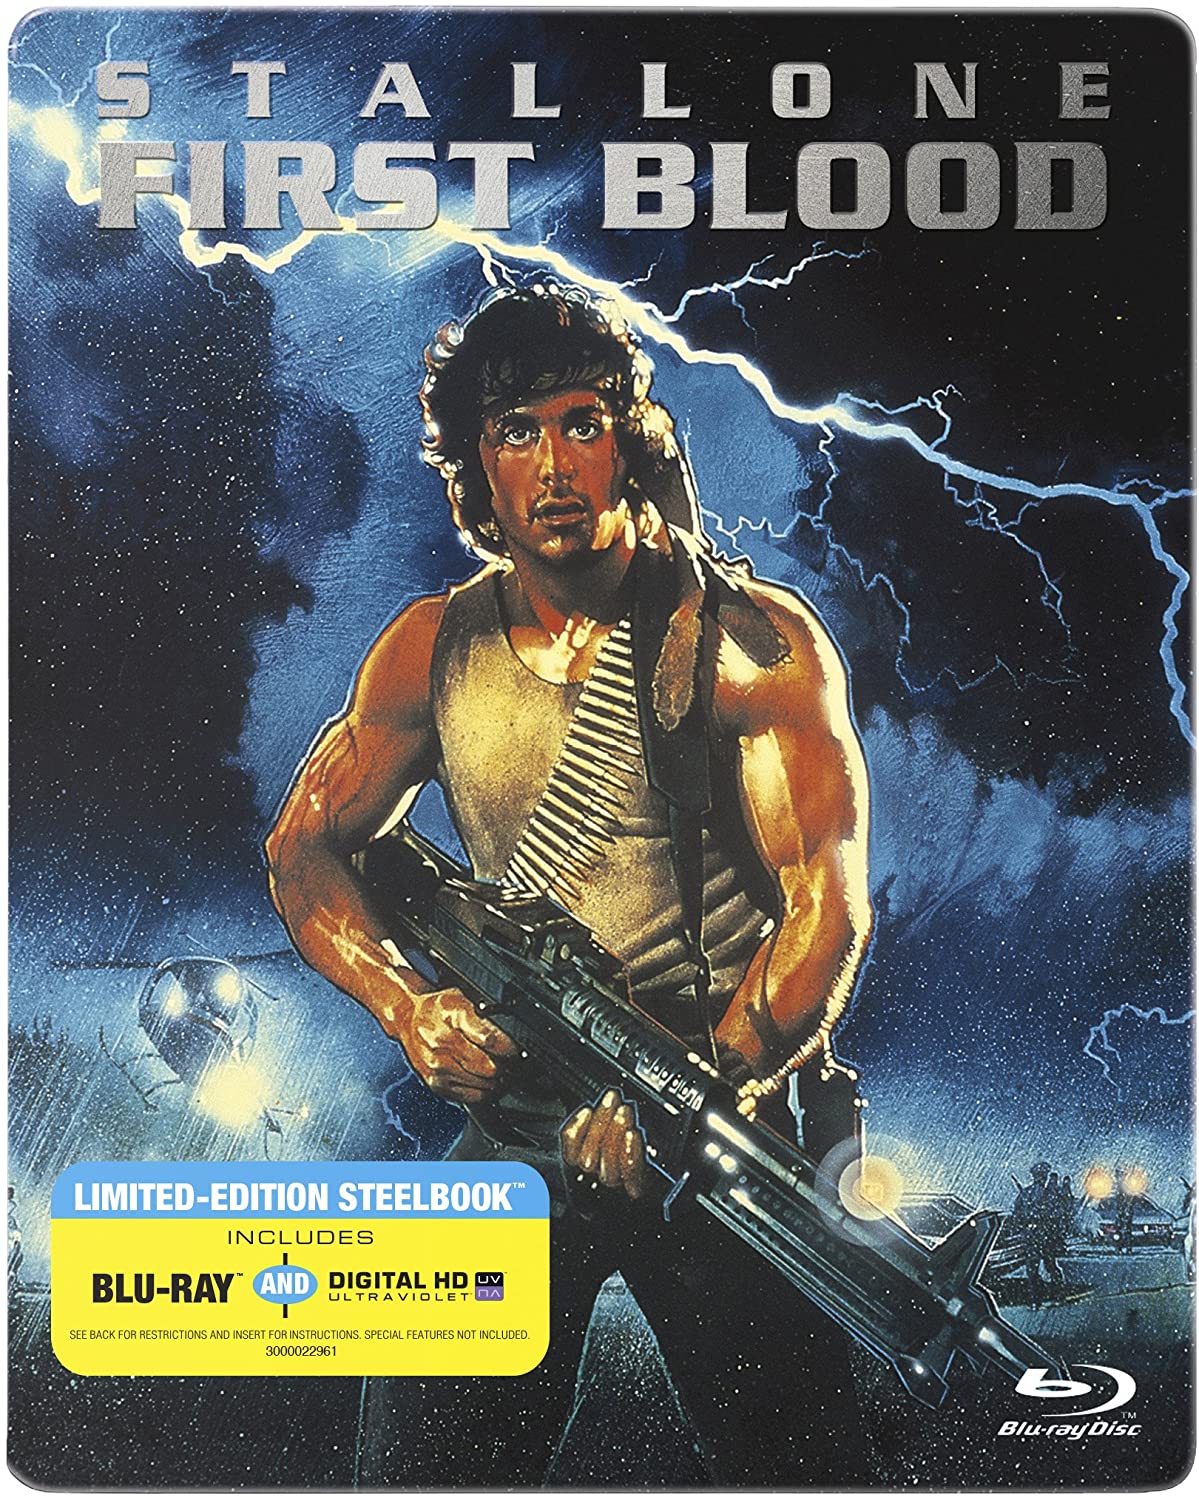 Stiahni si HD Filmy Rambo - First Blood - Prvni krev (1982)(Remastered)(BluRay)(1080p)(3xCZ-EN) = CSFD 85%